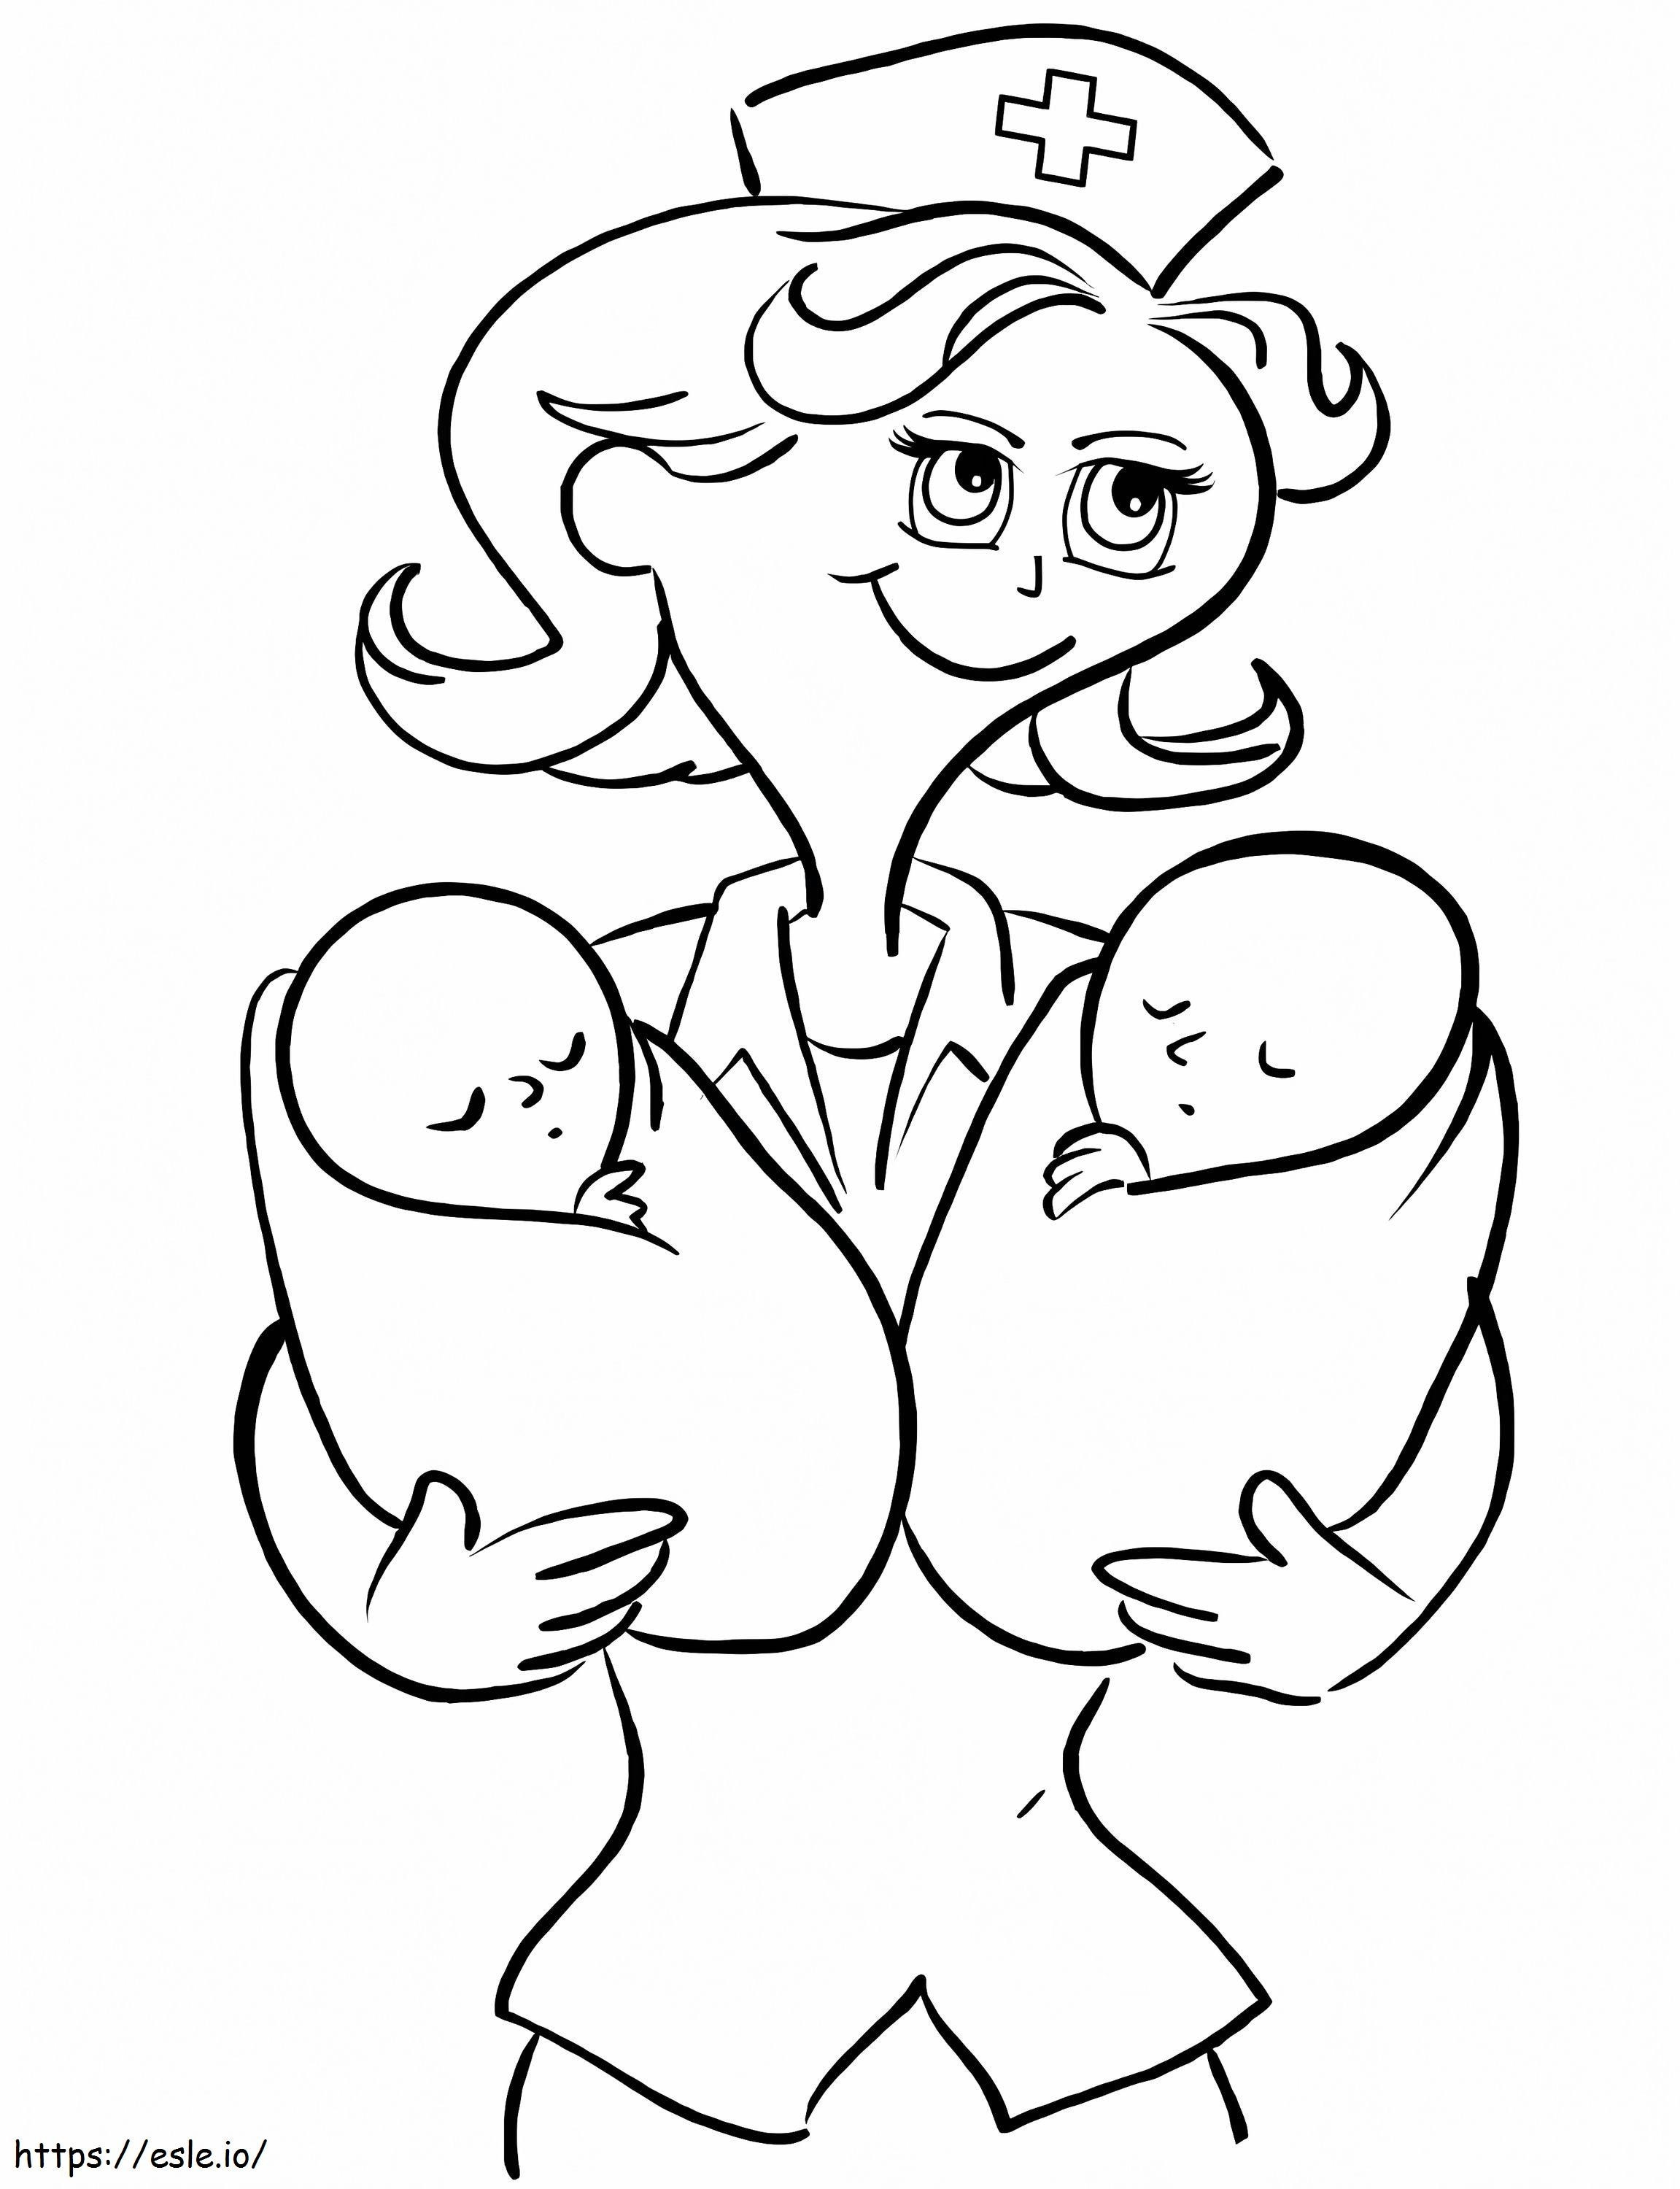 Enfermeira abraça dois bebês para colorir